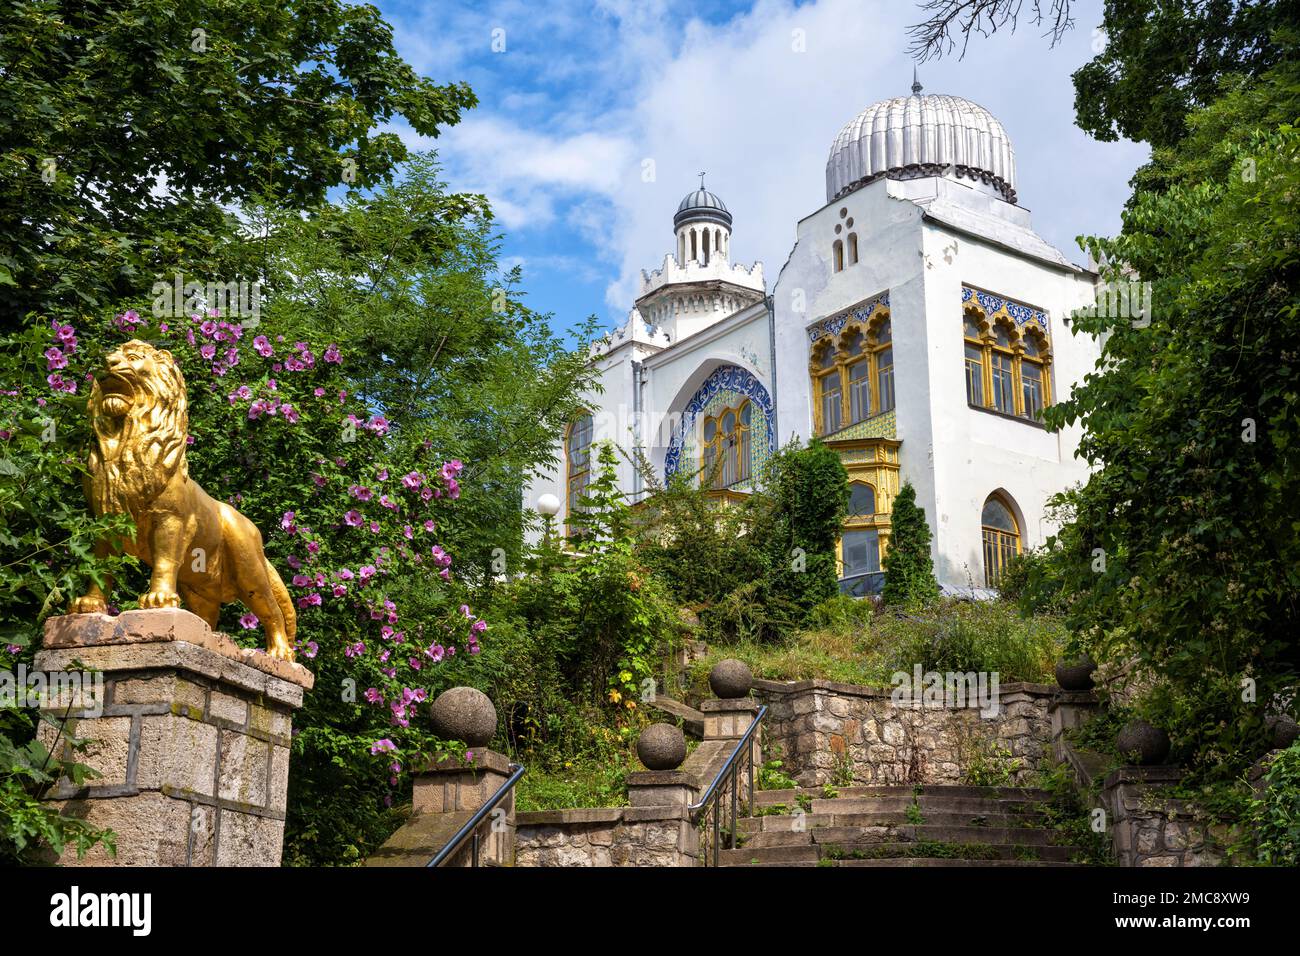 Palast von Emir von Bukhara in Zheleznowodsk, Russland. Landschaft des historischen Wahrzeichens der Stadt Zheleznowodsk im Sommer. Reisen, Tourismus und Sightseeing in Stockfoto